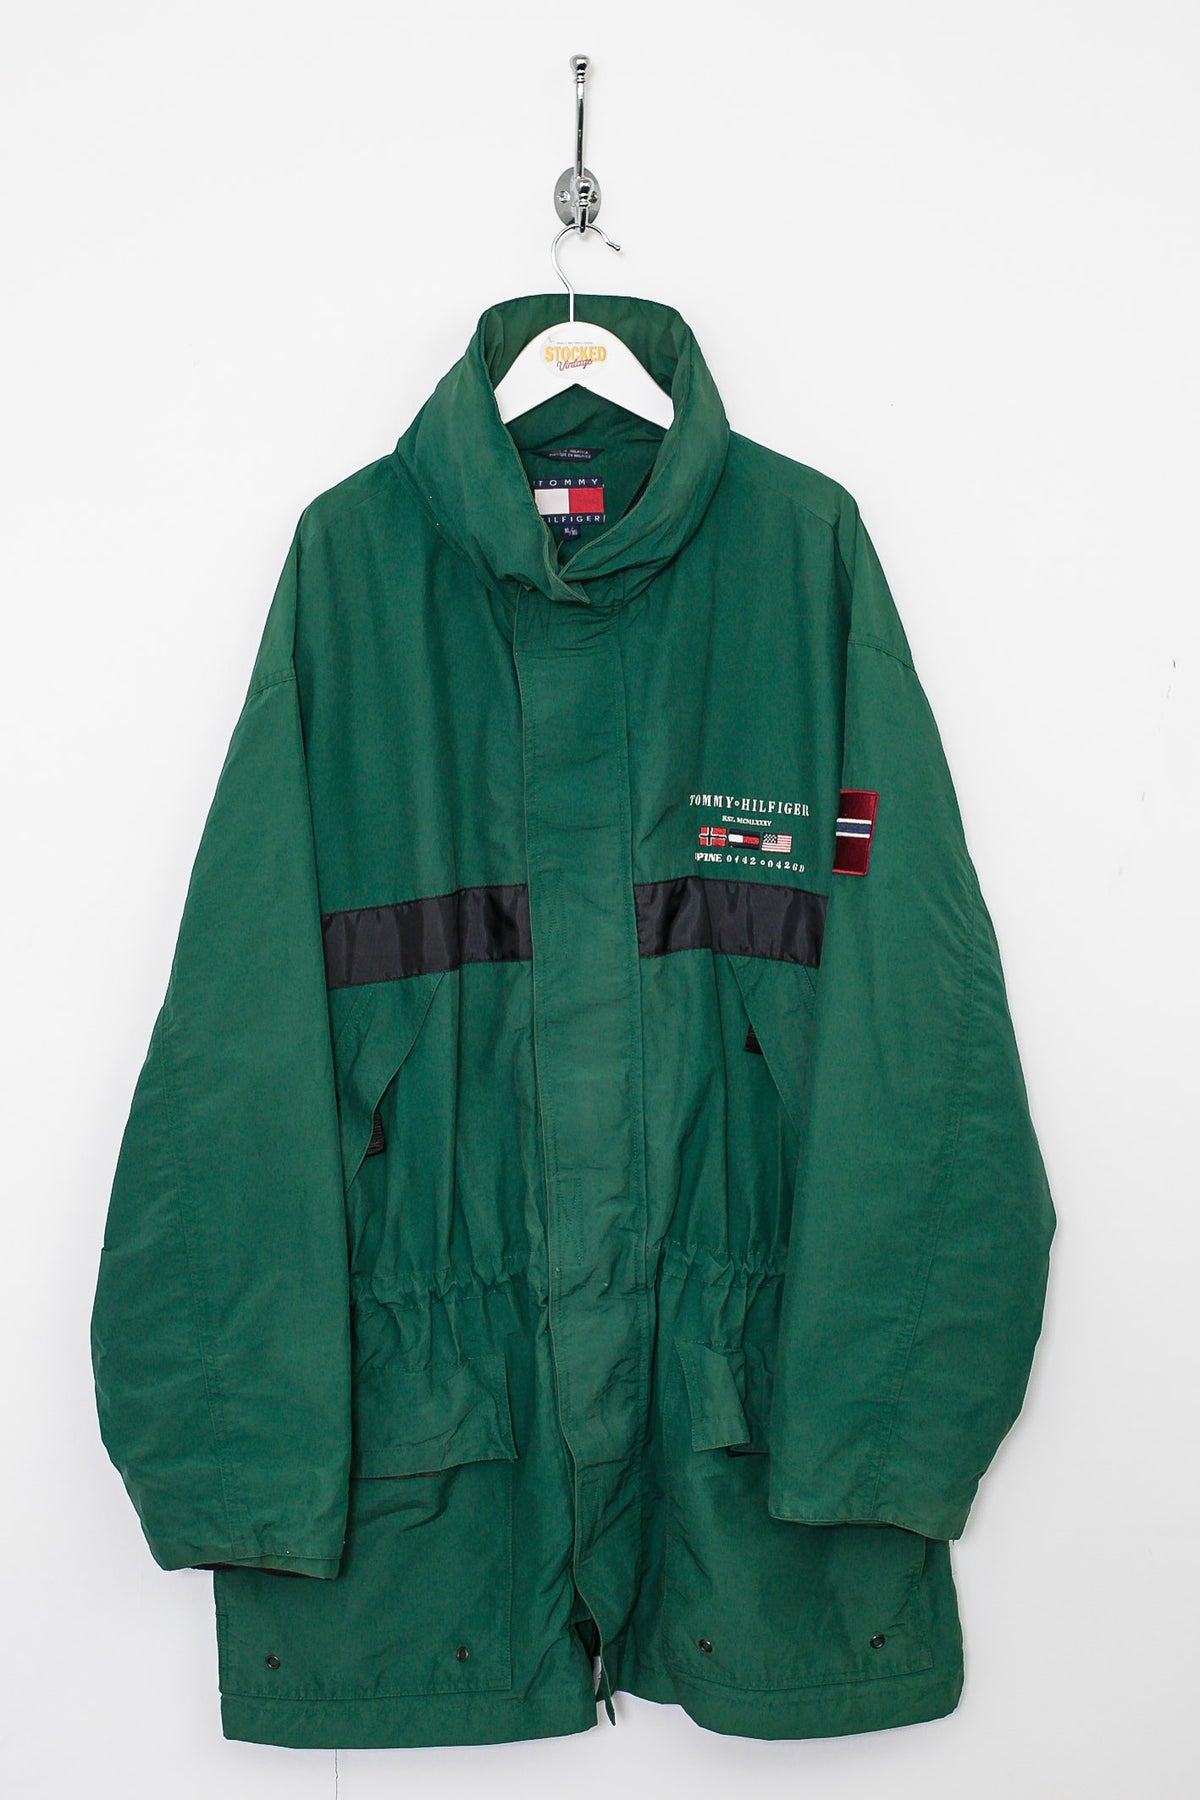 90s Tommy Hilfiger Coat (XL)